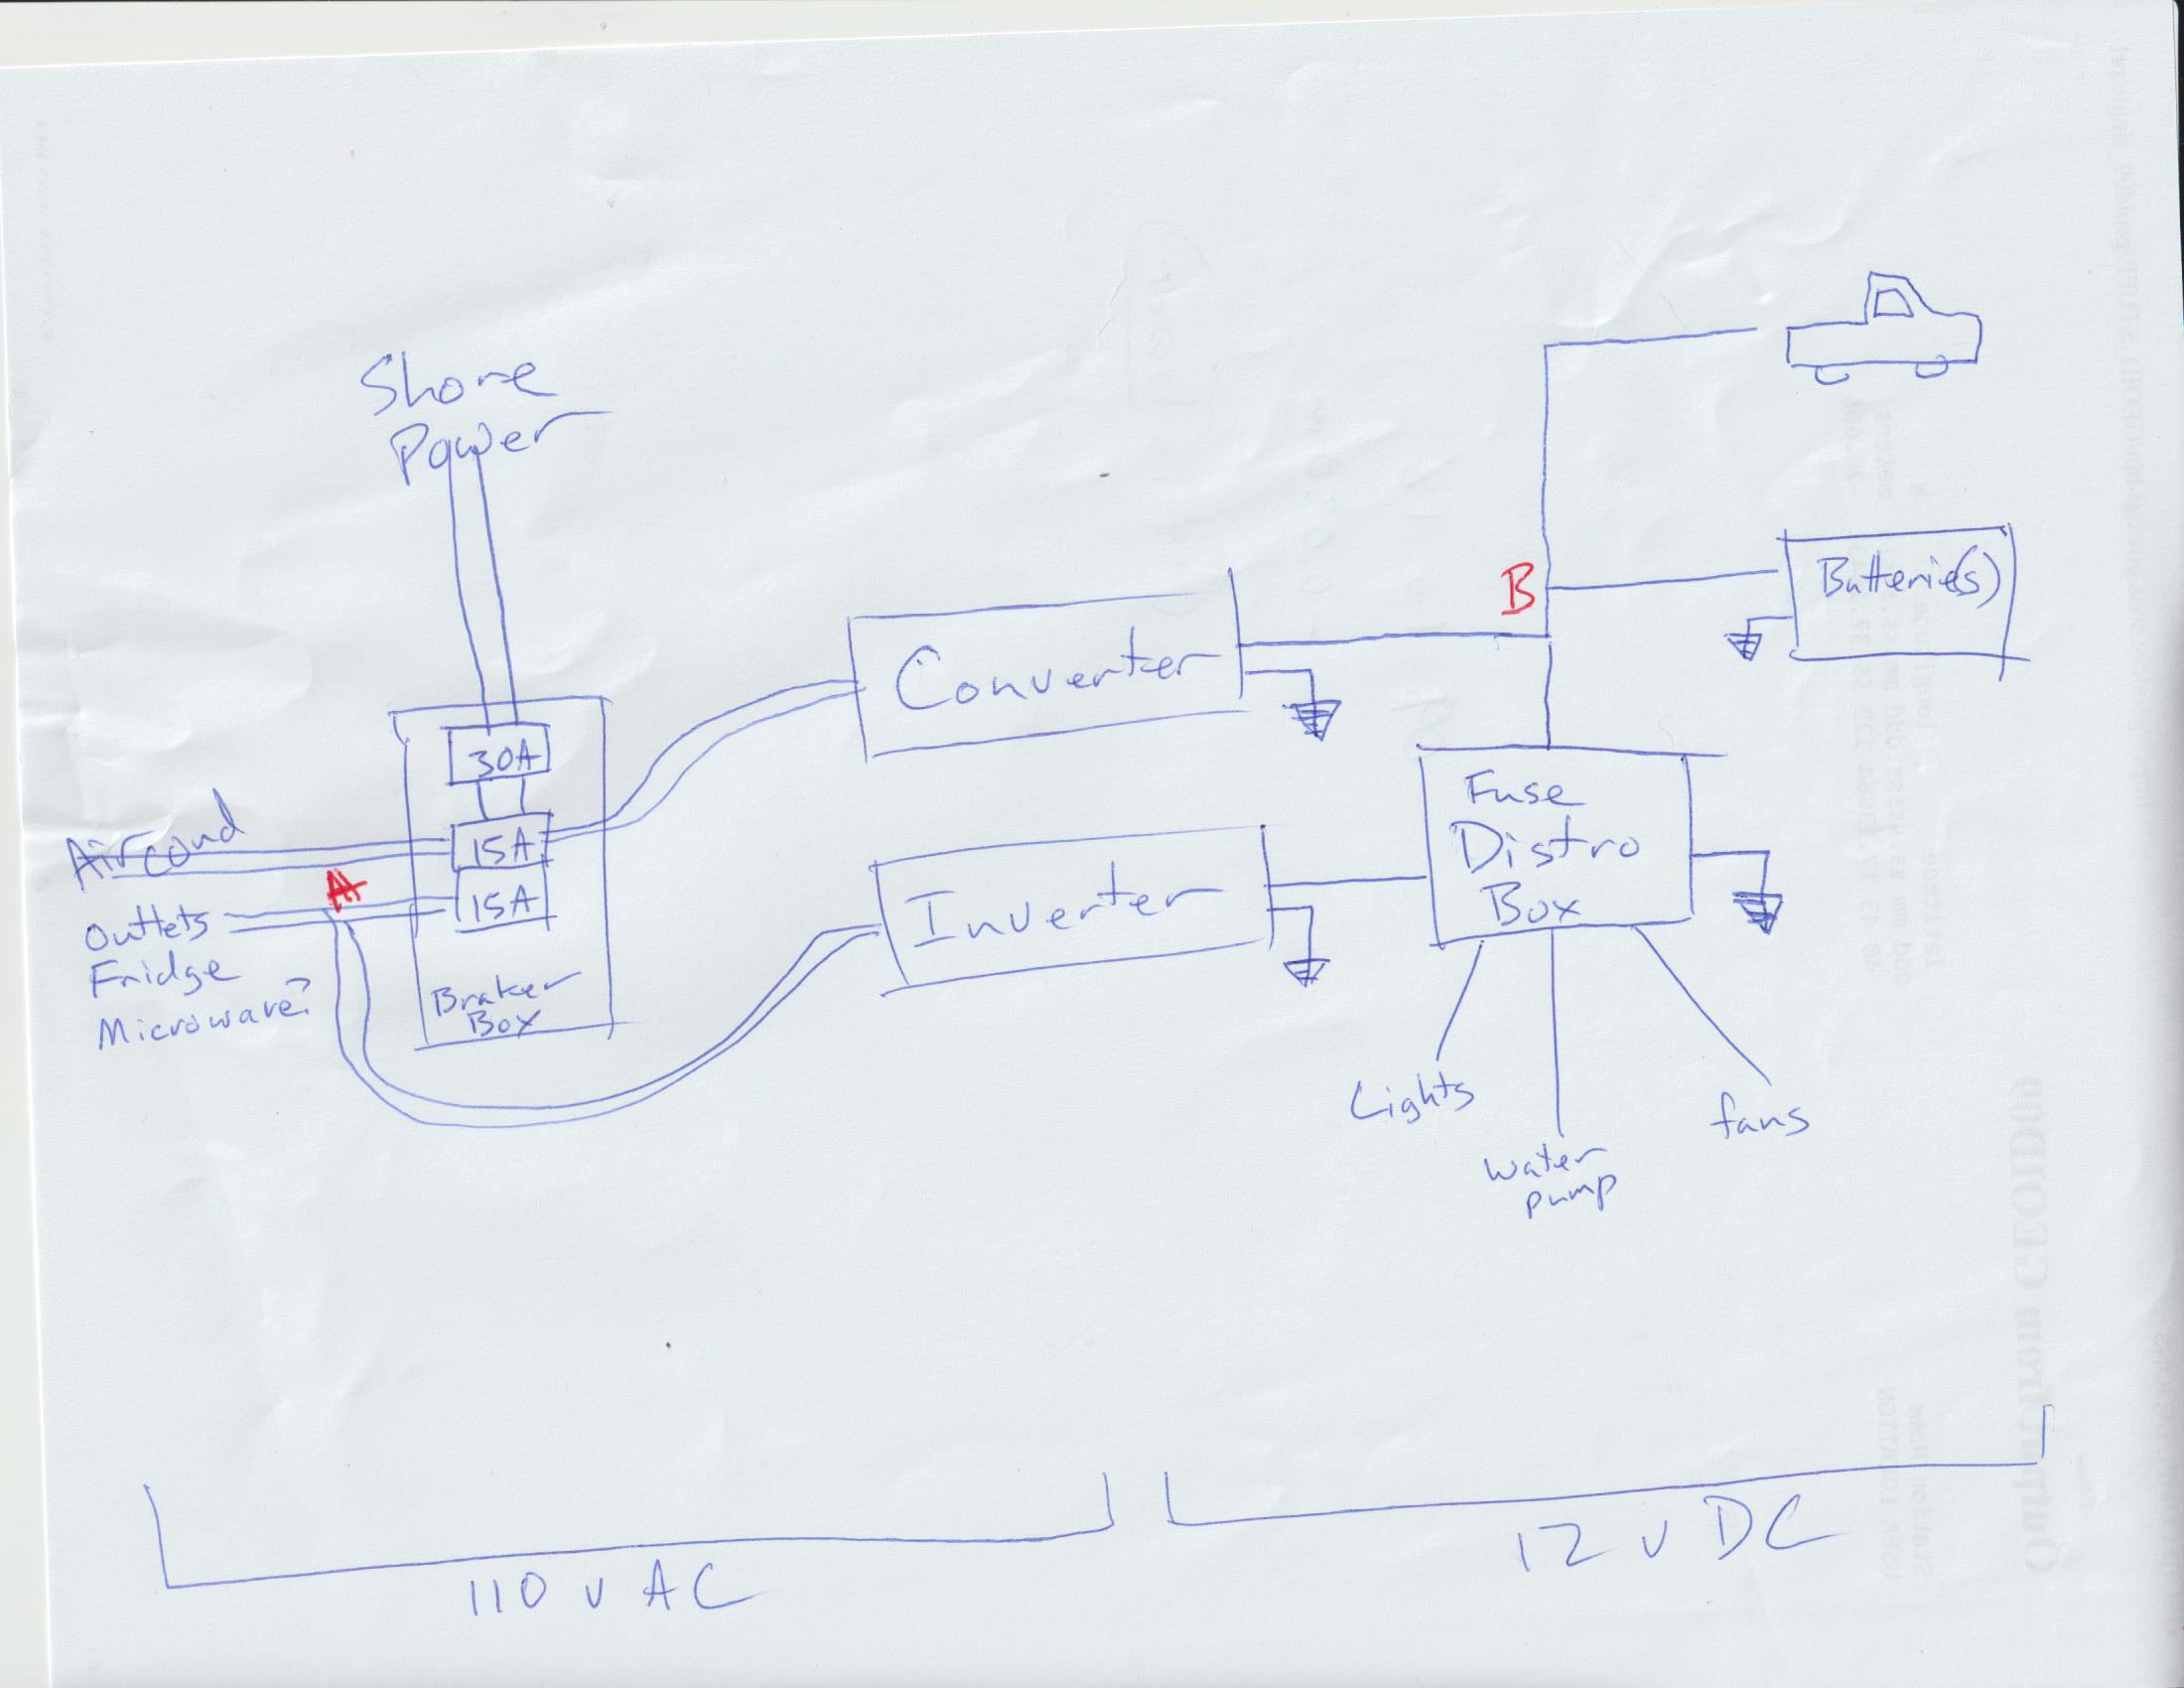 Wiring diagram image.